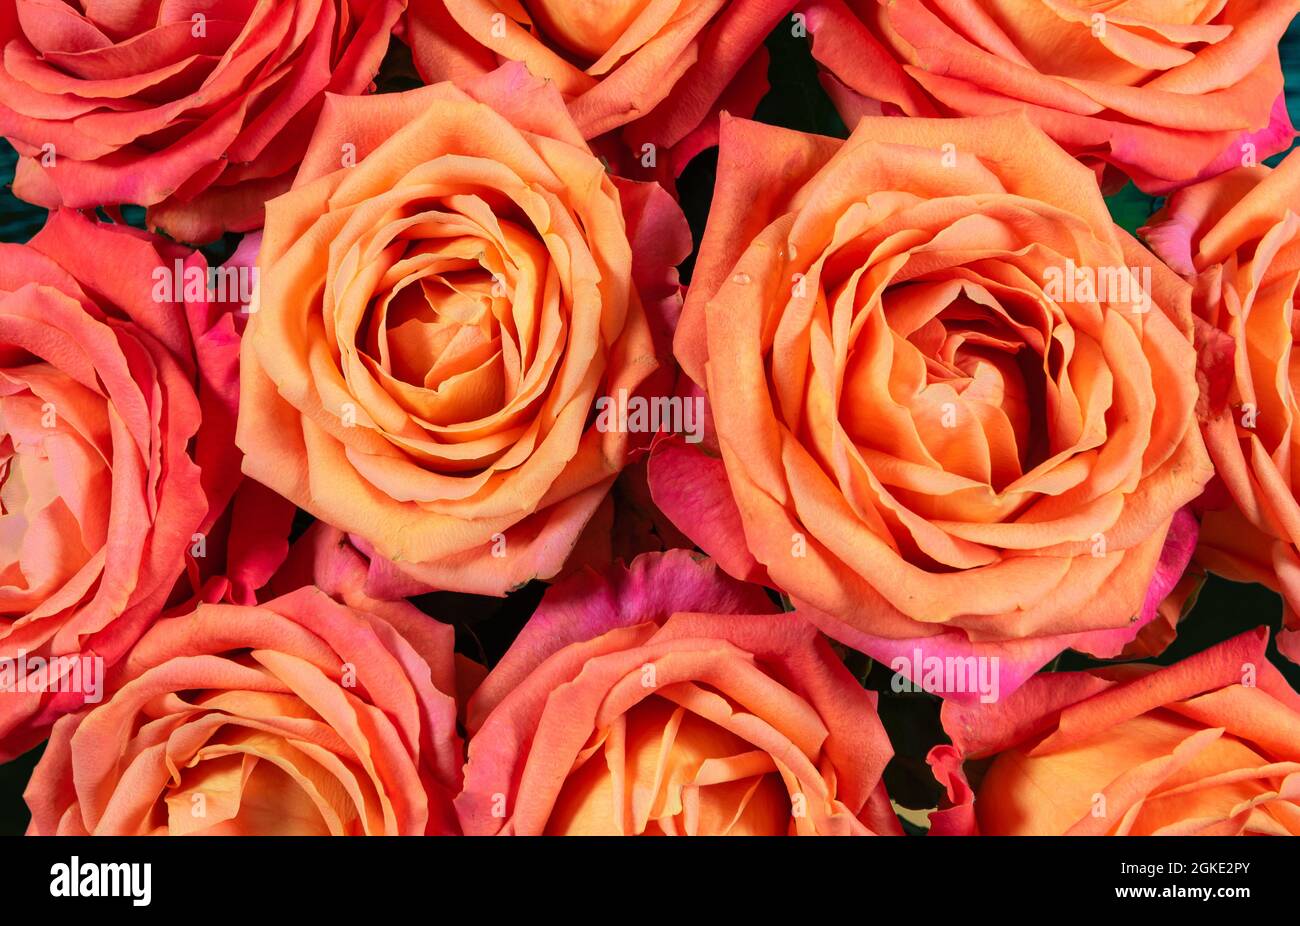 Magnifique fond de roses orange. Banque D'Images